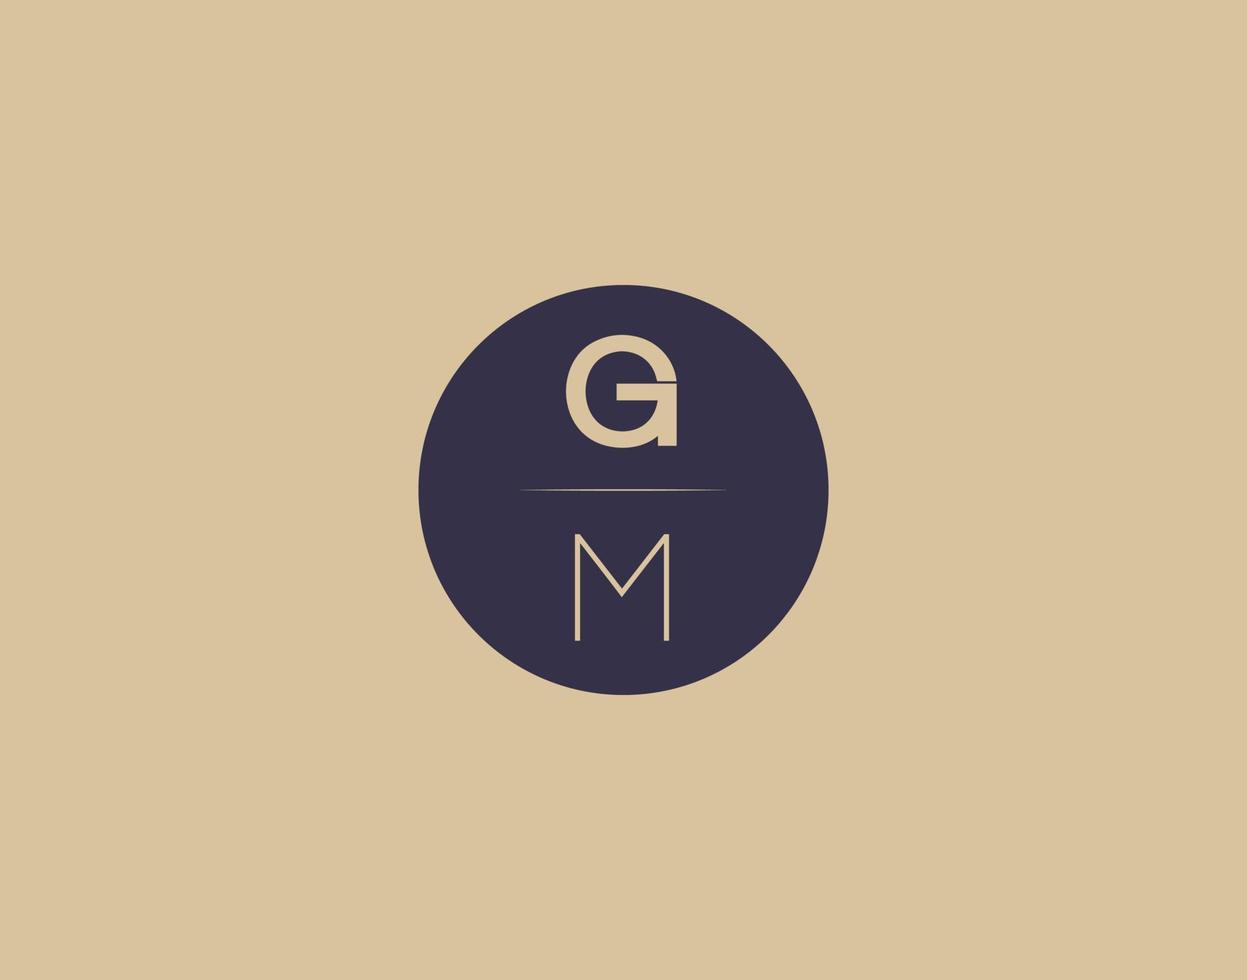 gm brief modern elegant logo ontwerp vector afbeeldingen